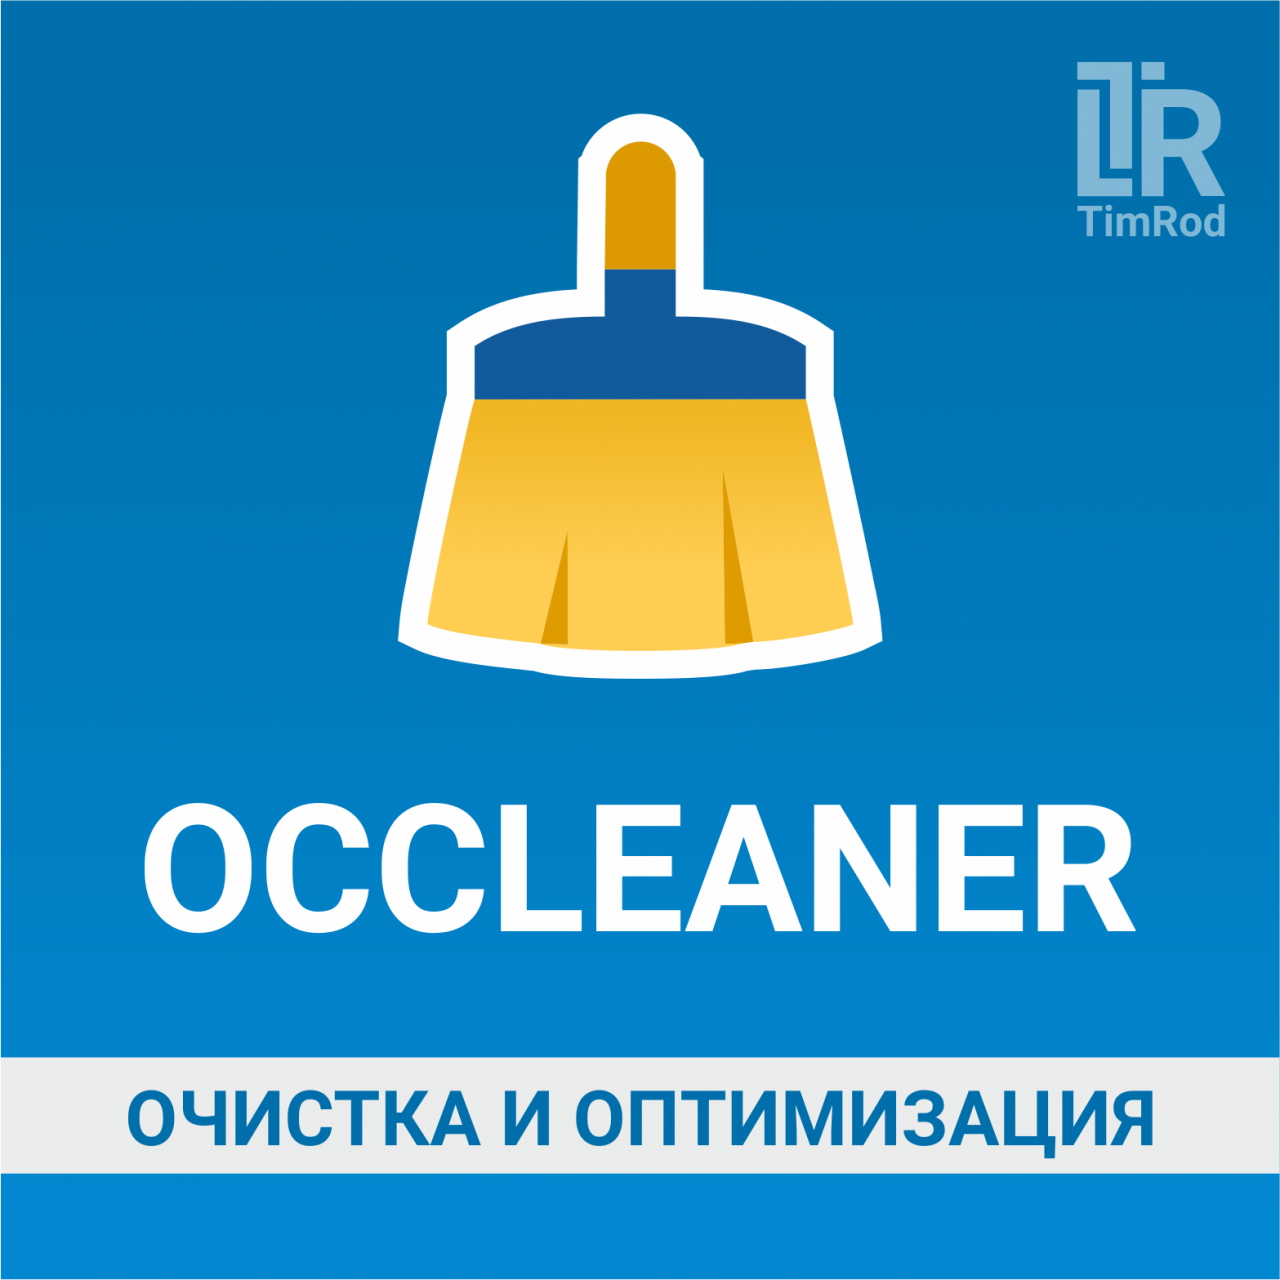 OCCleaner - очистка и оптимизация из категории Кэширование, Сжатие, Ускорение для CMS OpenCart (ОпенКарт)